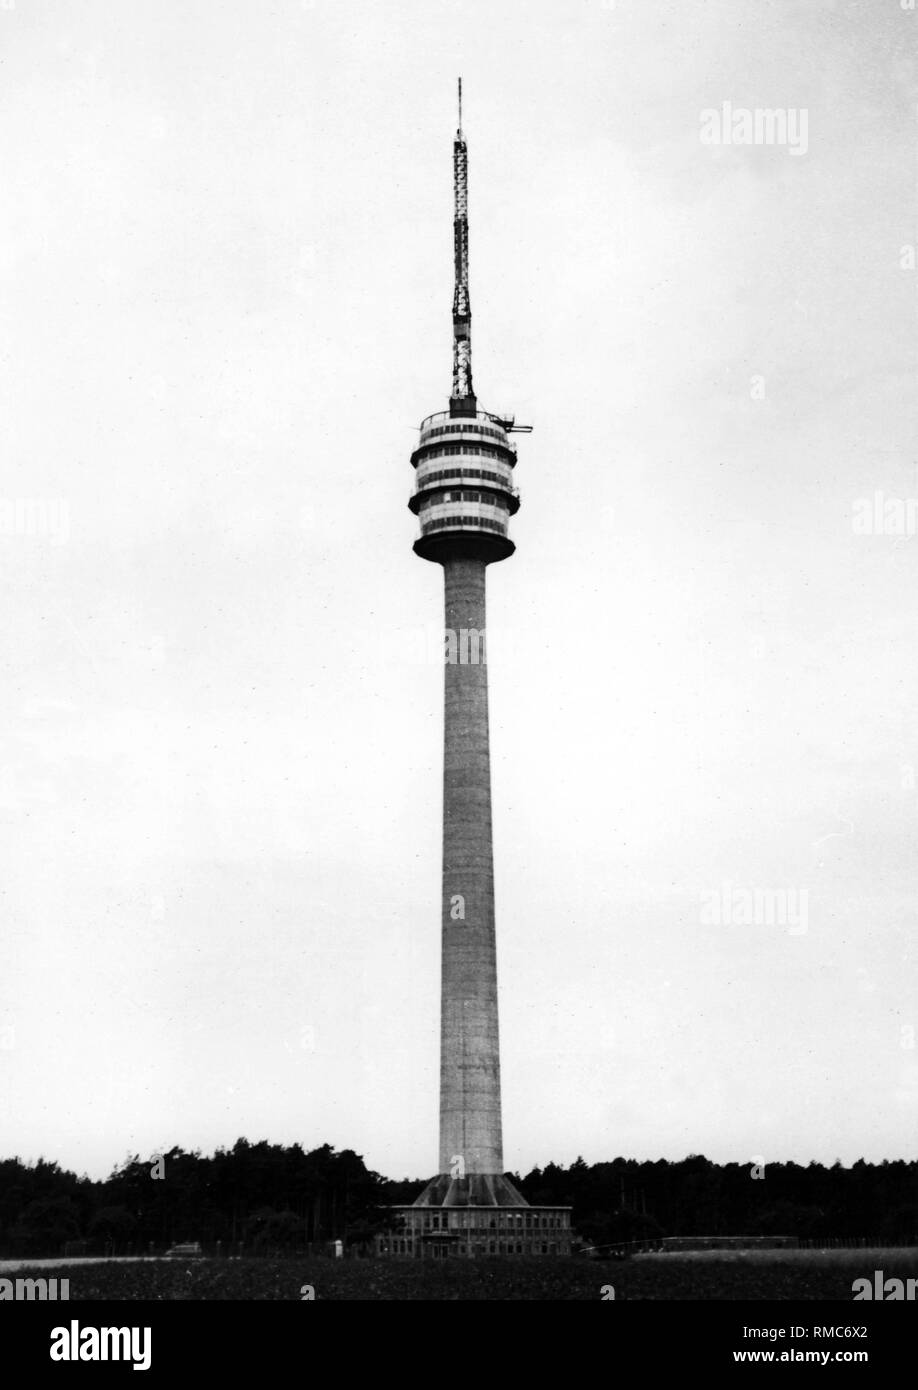 Der 185 Meter hohe funkturm Dequede im Landkreis Stendal wurde 1955 erbaut - 1959 als erste Fernmeldeturm in der DDR nach den Stuttgarter Fernsehturm aus Stahlbeton modelliert. Stockfoto